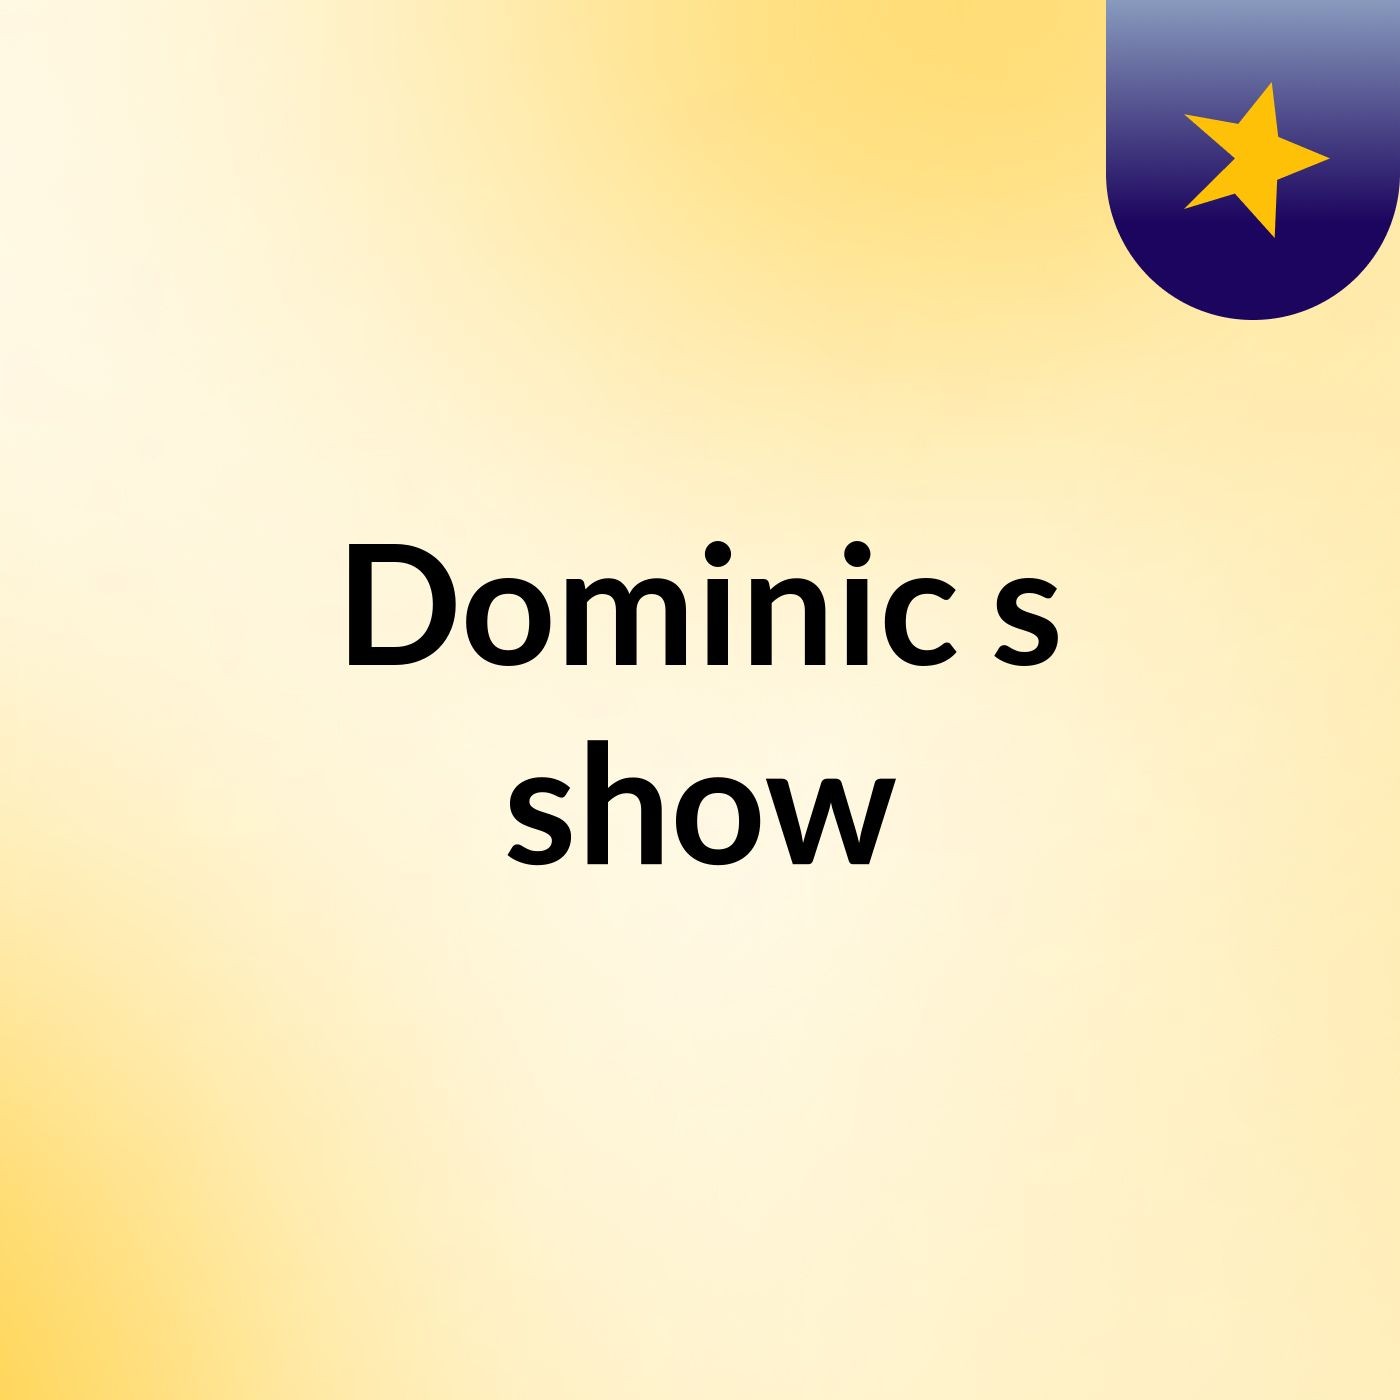 Dominic's show